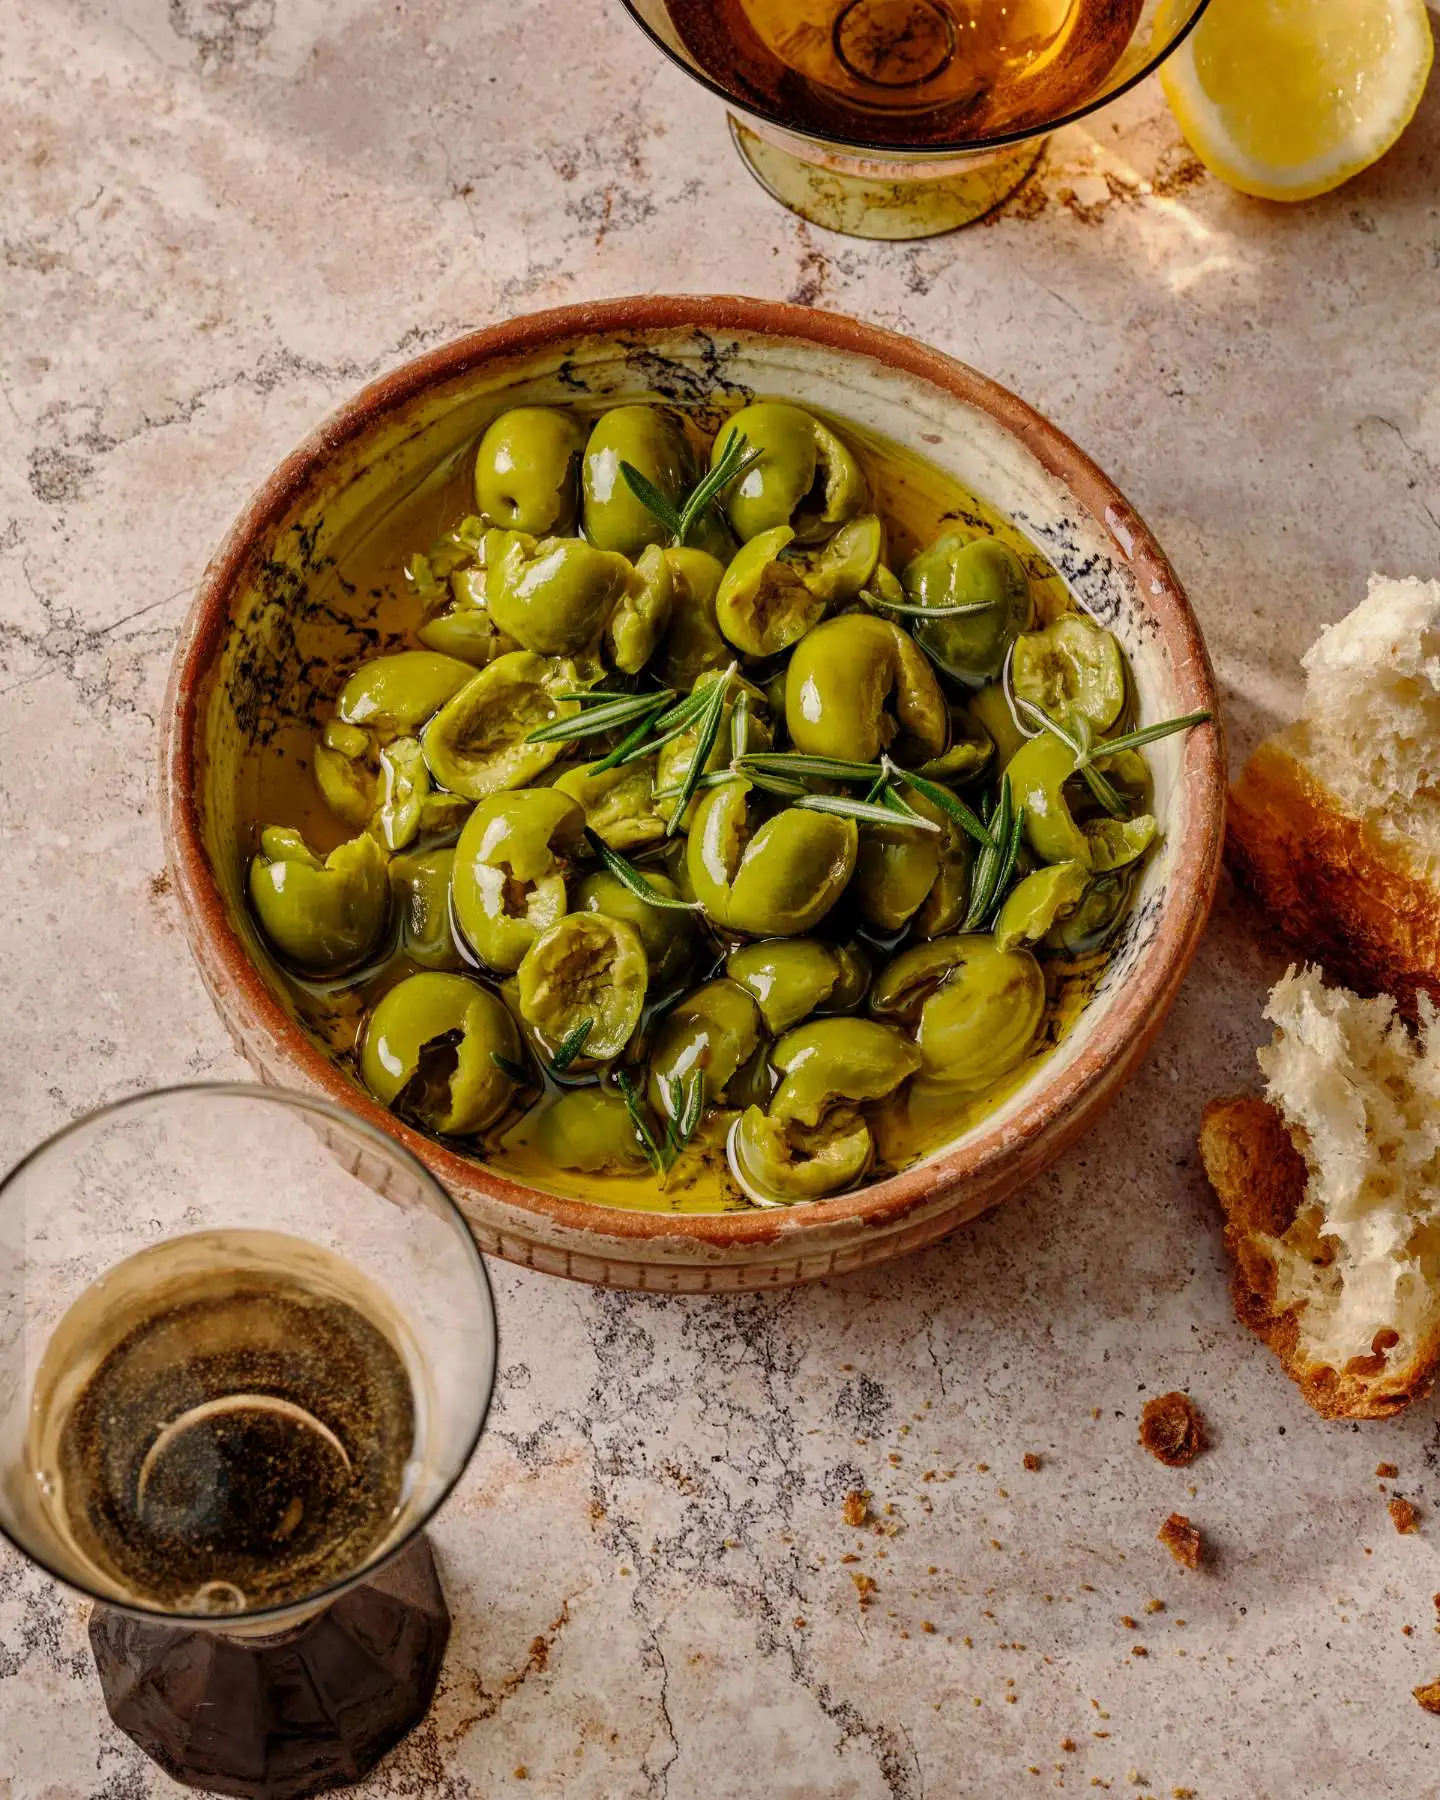 Warm Marinated Castelvetrano Olives with Garlic and Rosemary recipe by Casa de Suna